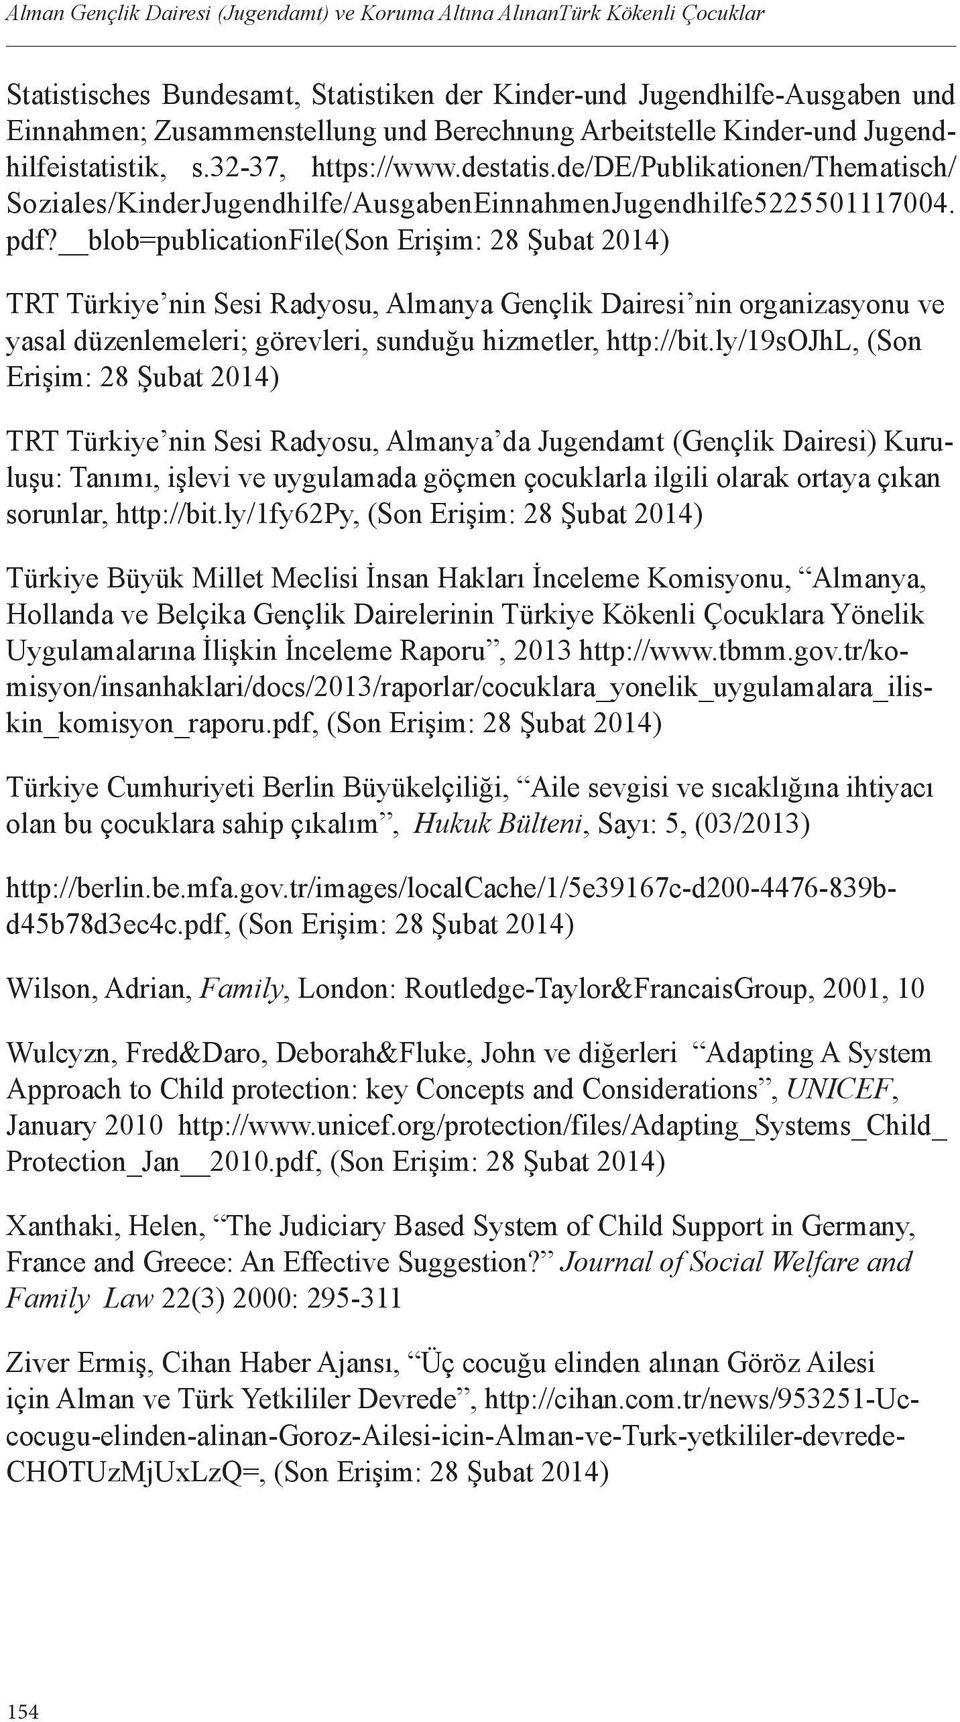 blob=publicationfile(son Erişim: 28 Şubat 2014) TRT Türkiye nin Sesi Radyosu, Almanya Gençlik Dairesi nin organizasyonu ve yasal düzenlemeleri; görevleri, sunduğu hizmetler, http://bit.